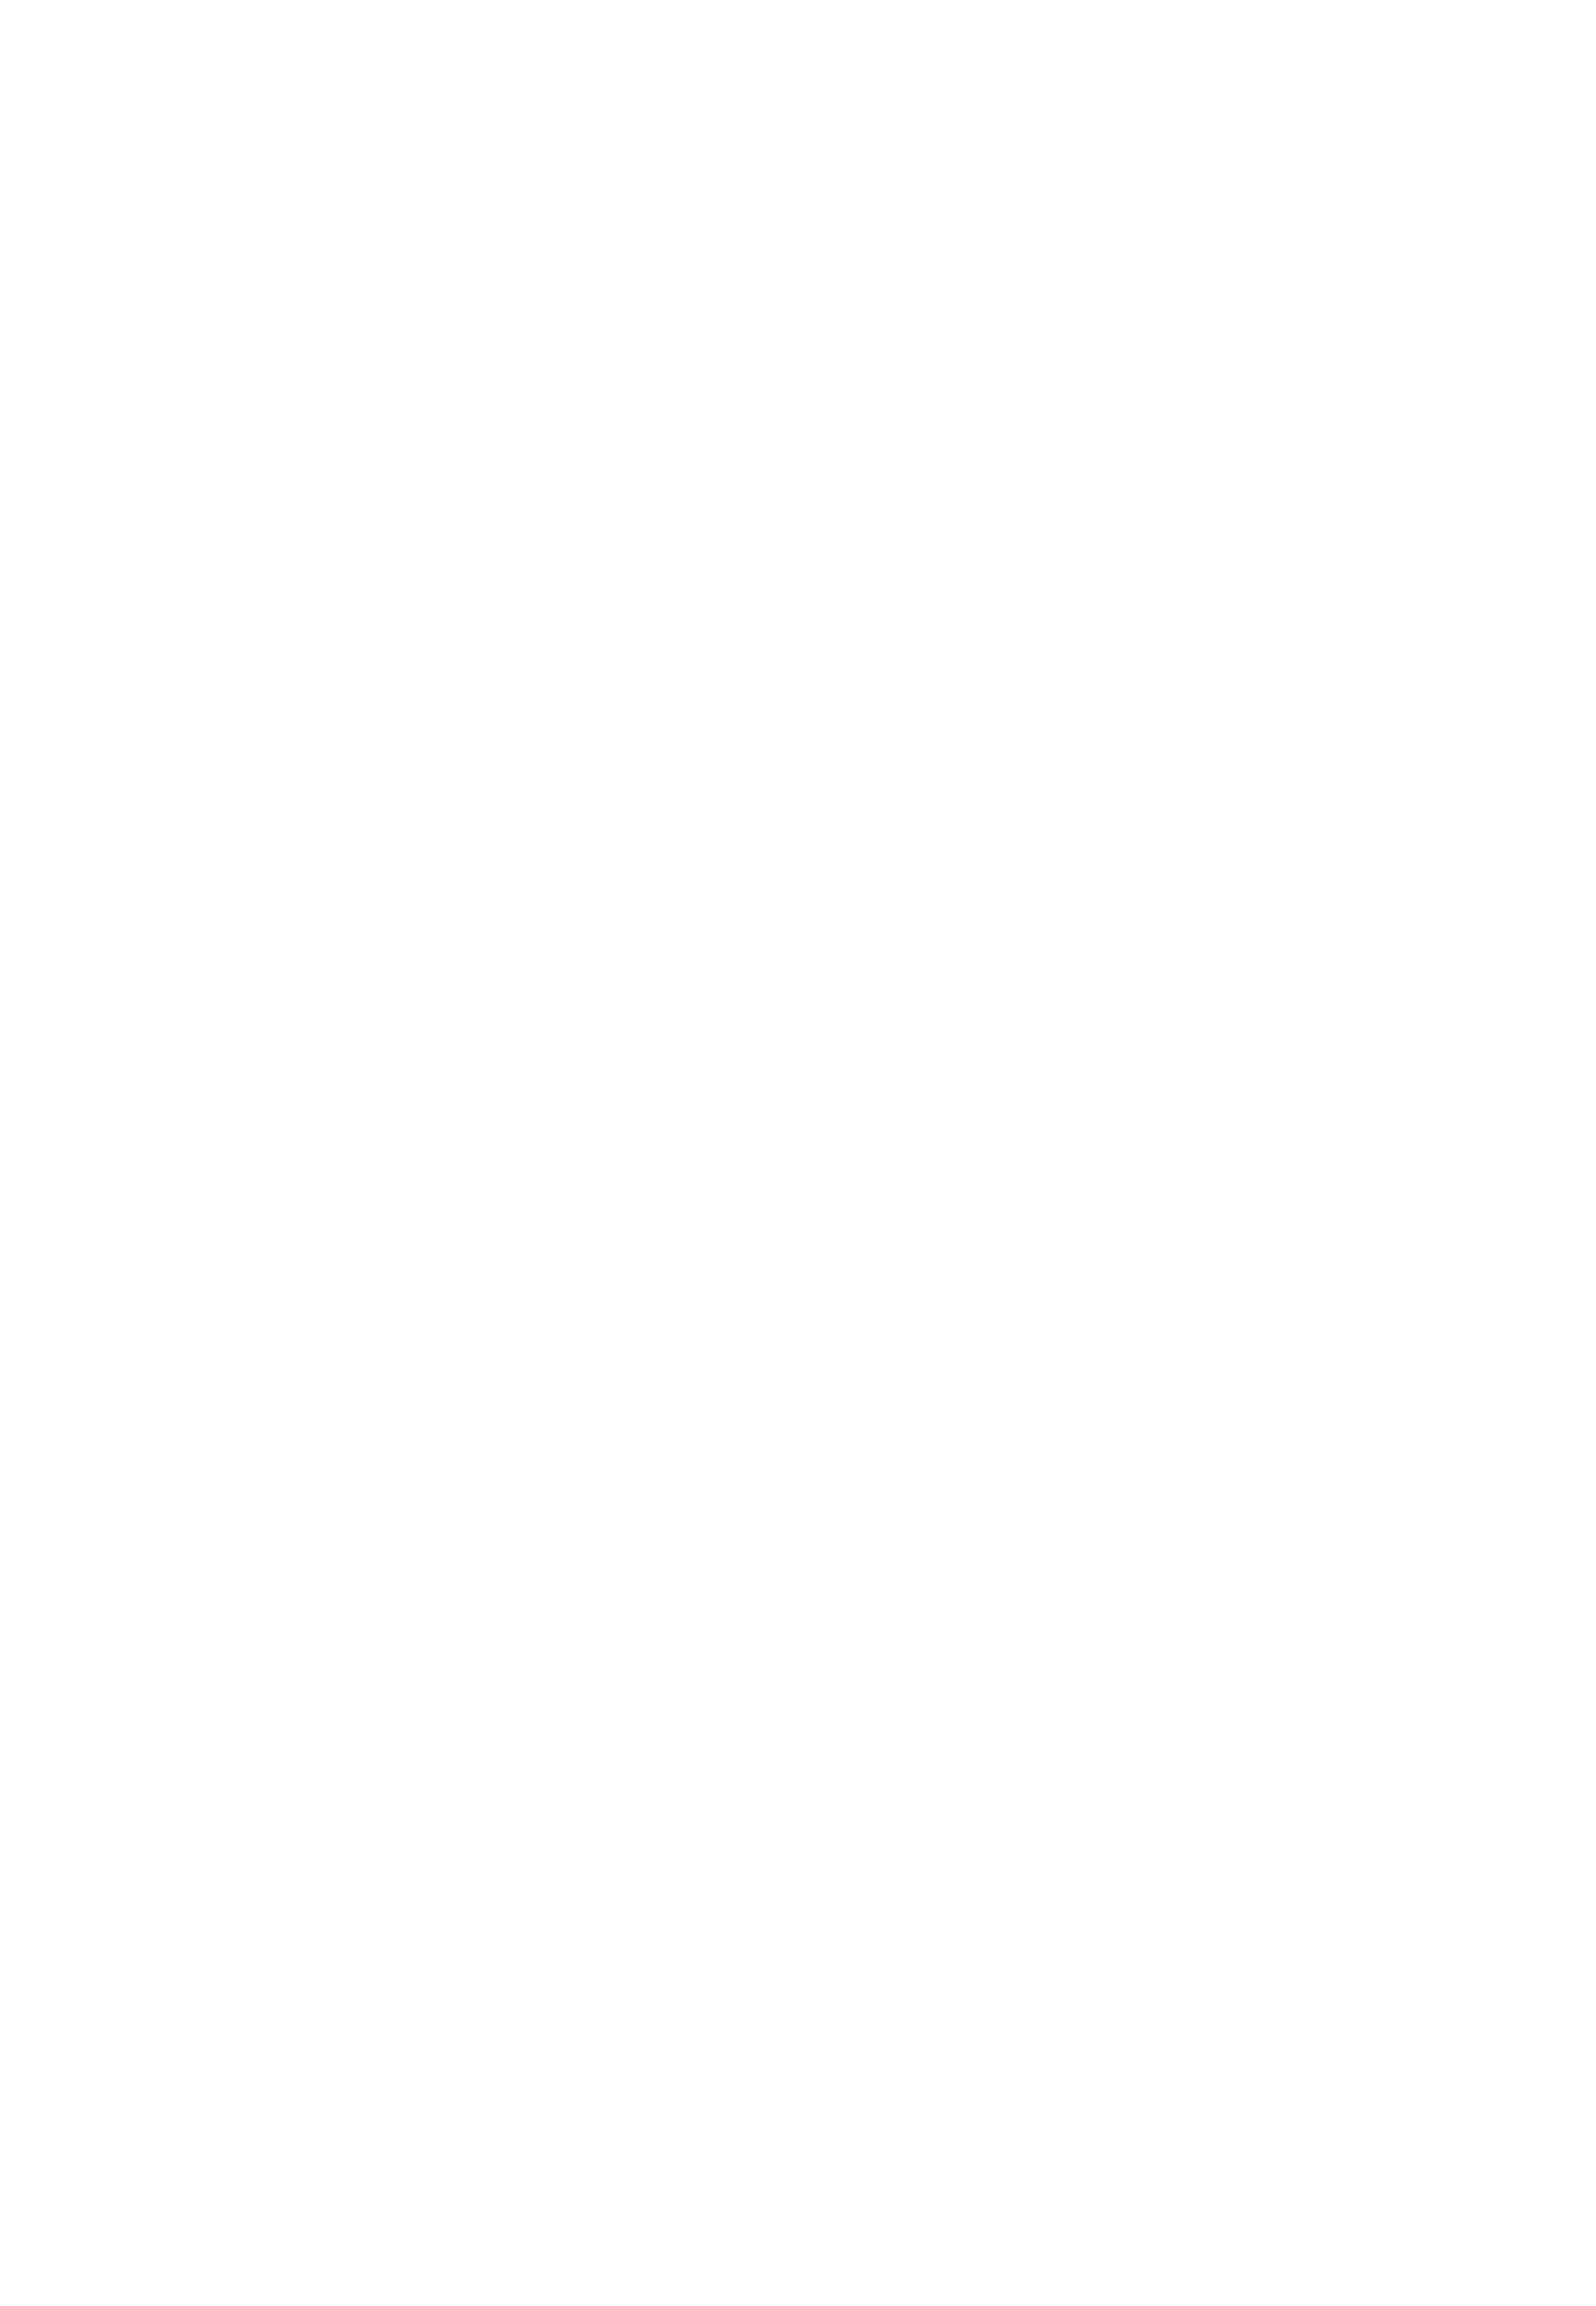 Василий Суриков. Портрет минусинского татарина. 1909. Новосибирский государственный художественный музей, Новосибирск